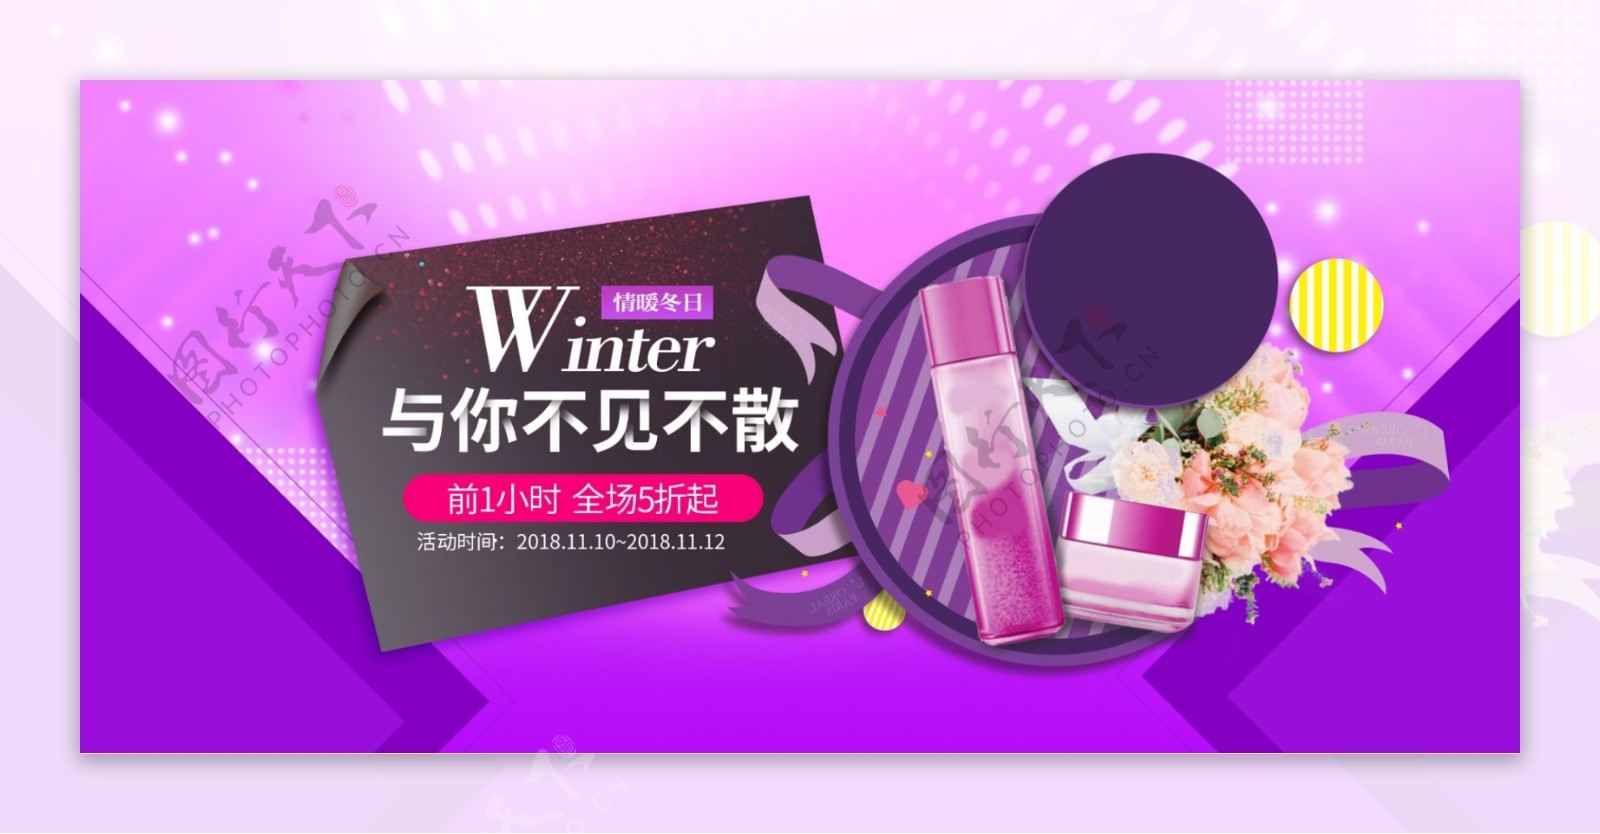 紫色大促风格化妆品美妆促销banner